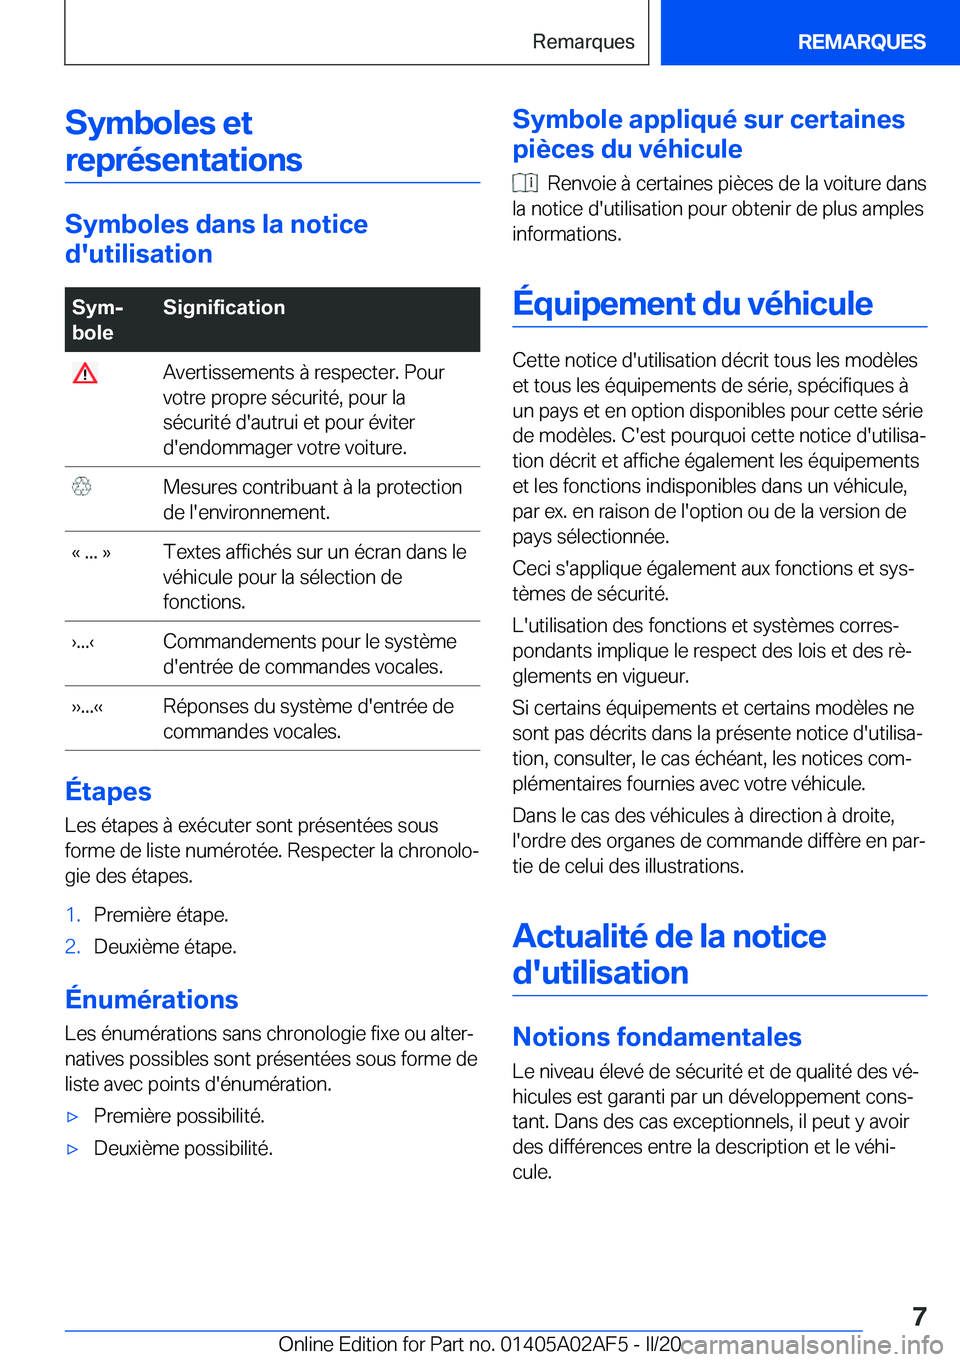 BMW X1 2020  Notices Demploi (in French) �S�y�m�b�o�l�e�s��e�t�r�e�p�r�é�s�e�n�t�a�t�i�o�n�s
�S�y�m�b�o�l�e�s��d�a�n�s��l�a��n�o�t�i�c�e
�d�'�u�t�i�l�i�s�a�t�i�o�n
�S�y�mj
�b�o�l�e�S�i�g�n�i�f�i�c�a�t�i�o�n��A�v�e�r�t�i�s�s�e�m�e�